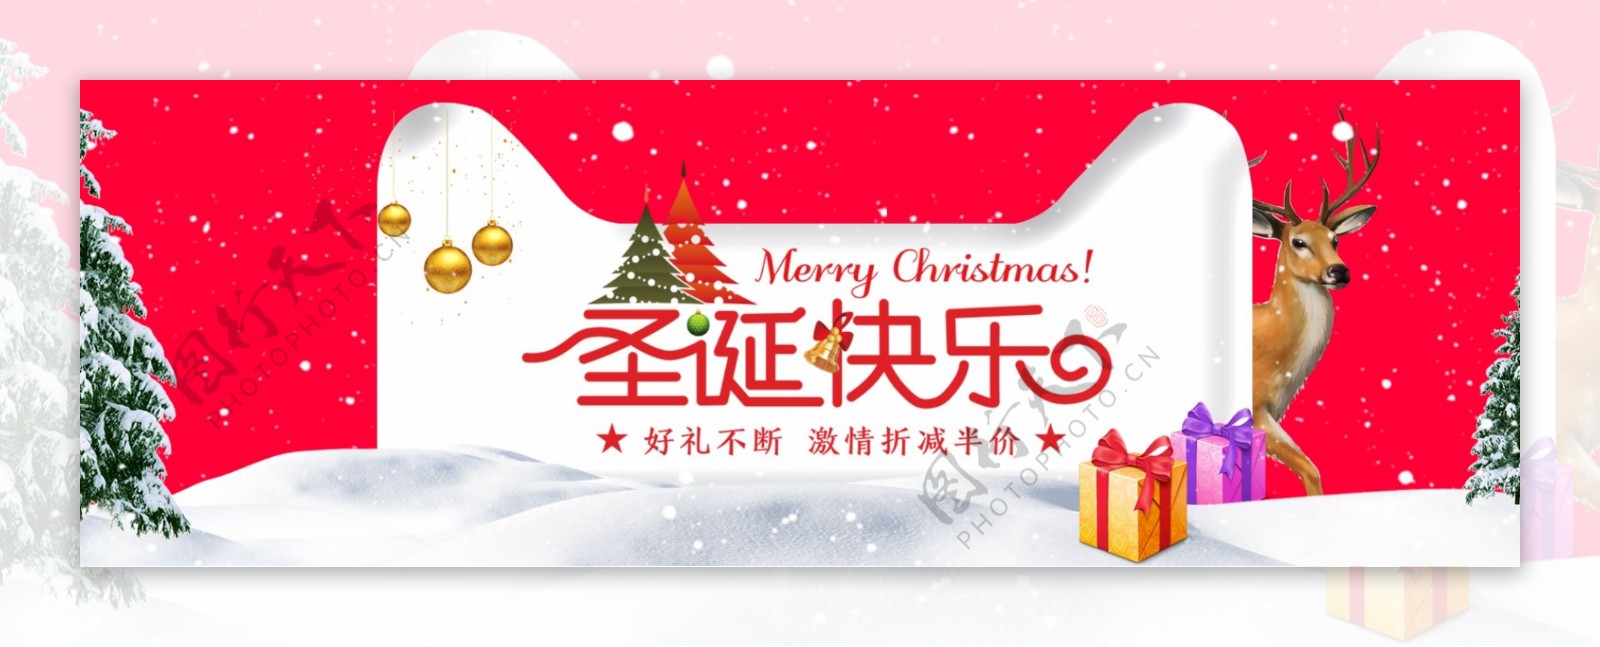 红色喜庆雪地美妆圣诞淘宝电商banner